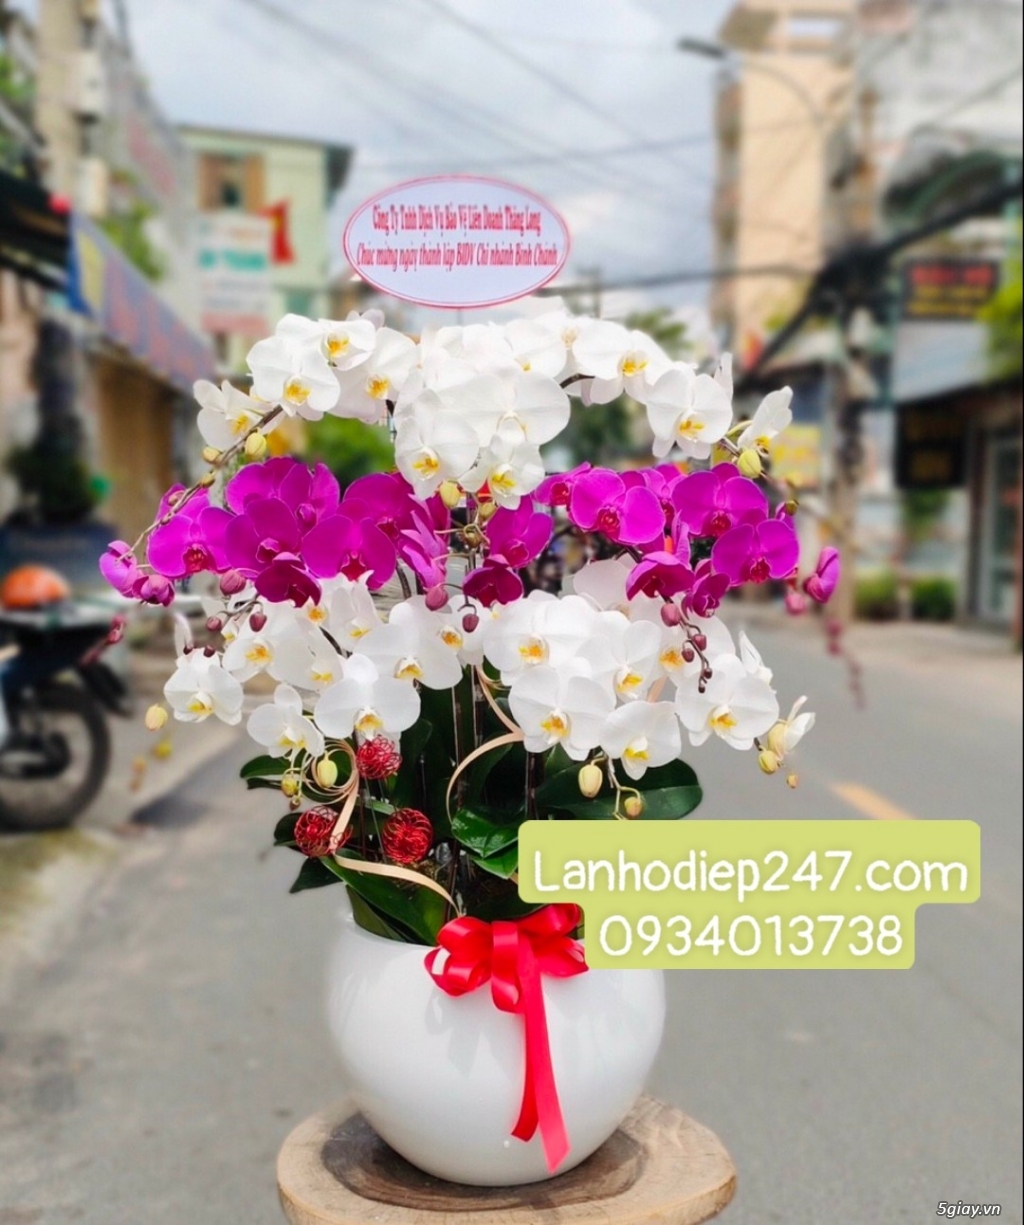 Cửa hàng Hoa Sài Gòn 247 là địa điểm đặt hoa uy tín nhất Sài Gòn - 13